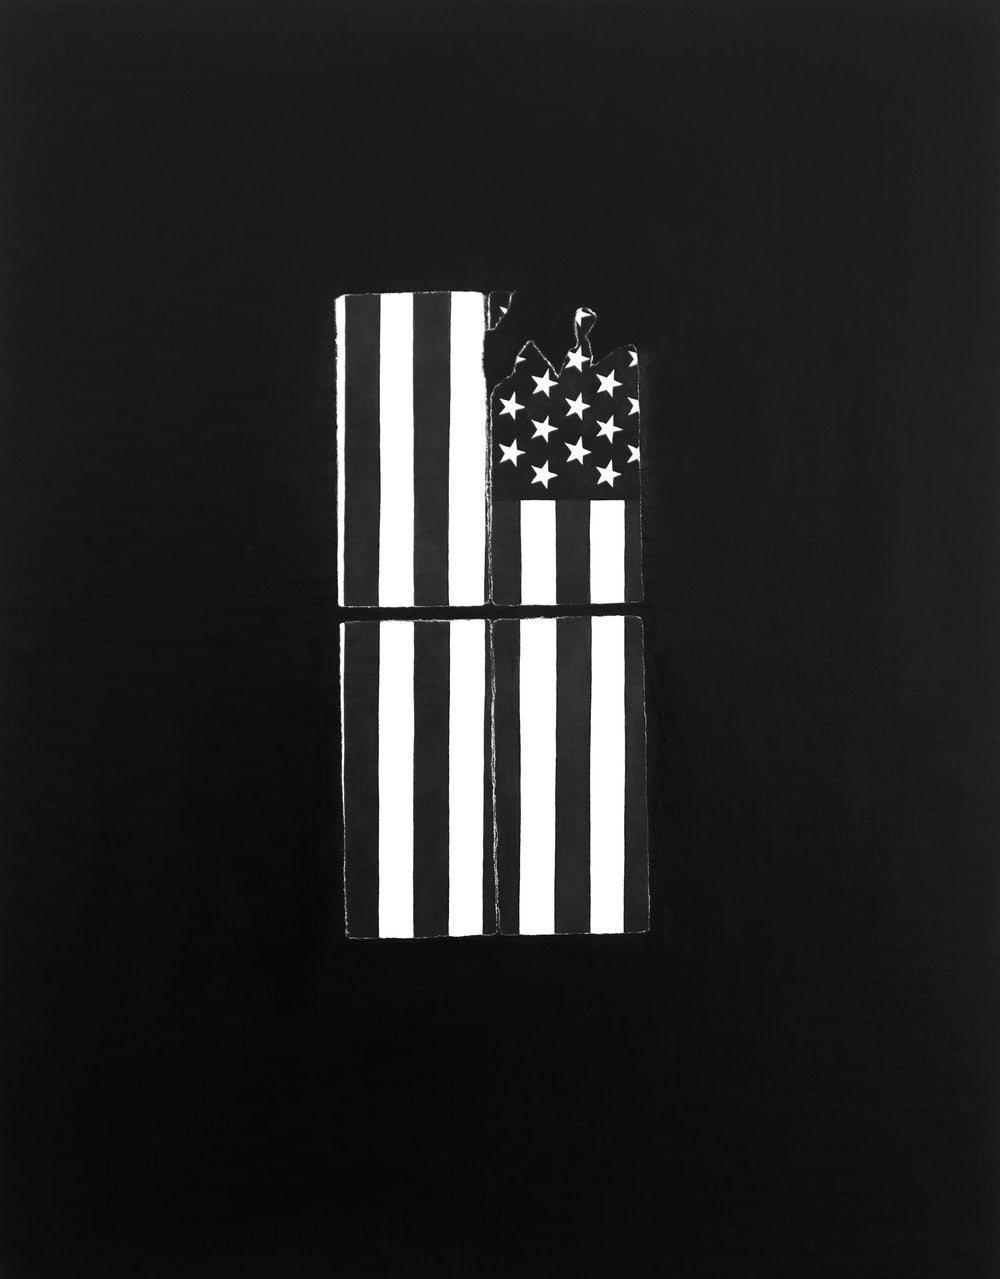 Alex Bierk, "American Window"